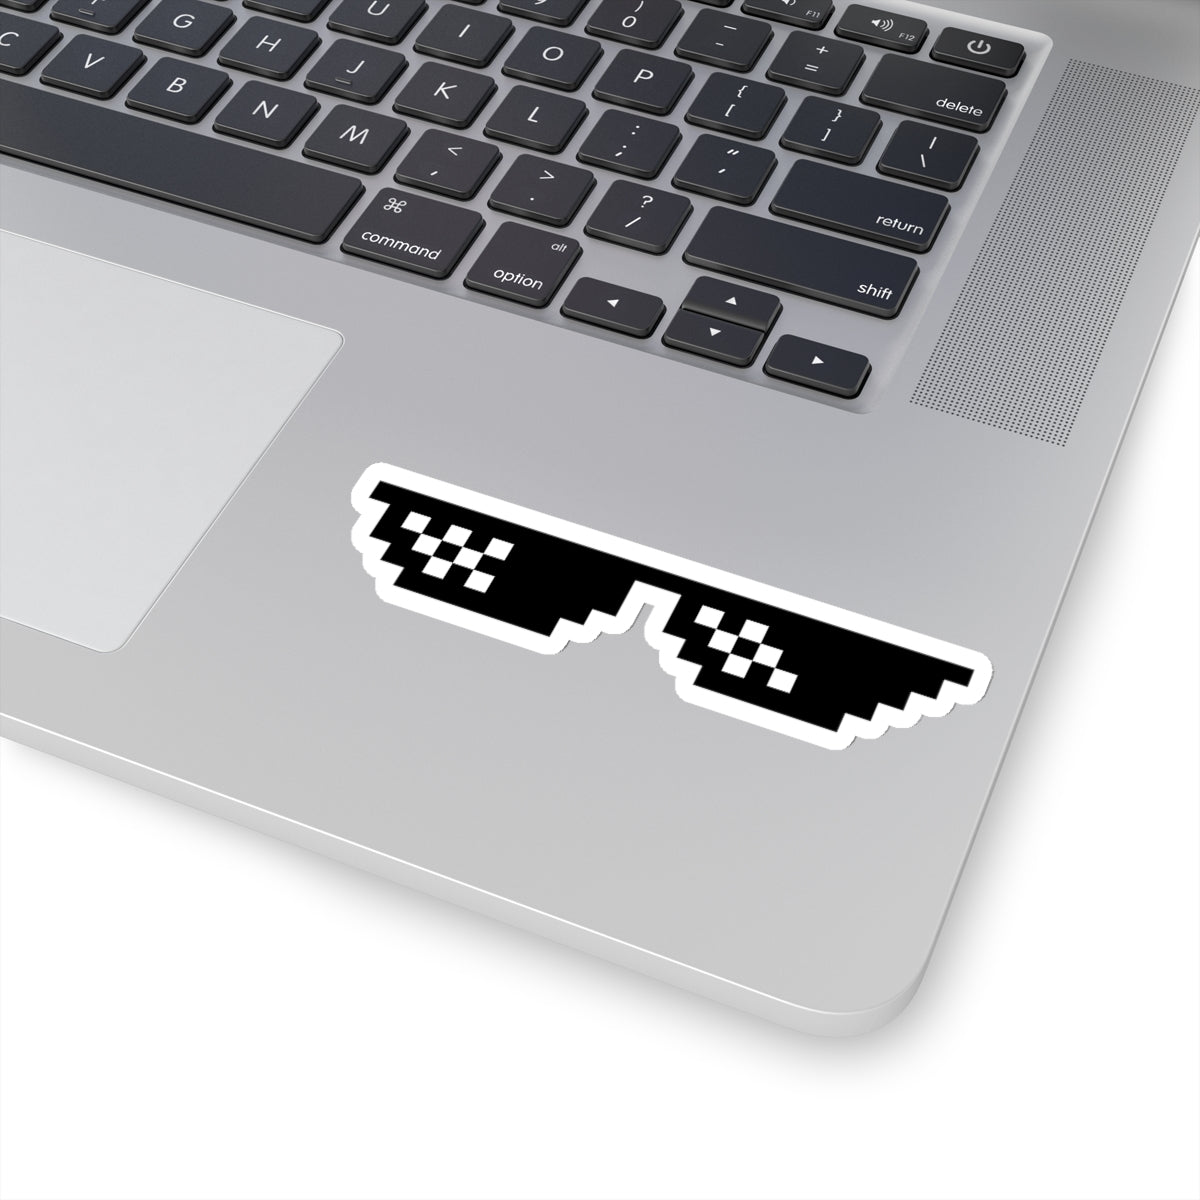 Like a Boss Glasses - Developer / Programmer / Software Engineer Kiss Cut Sticker